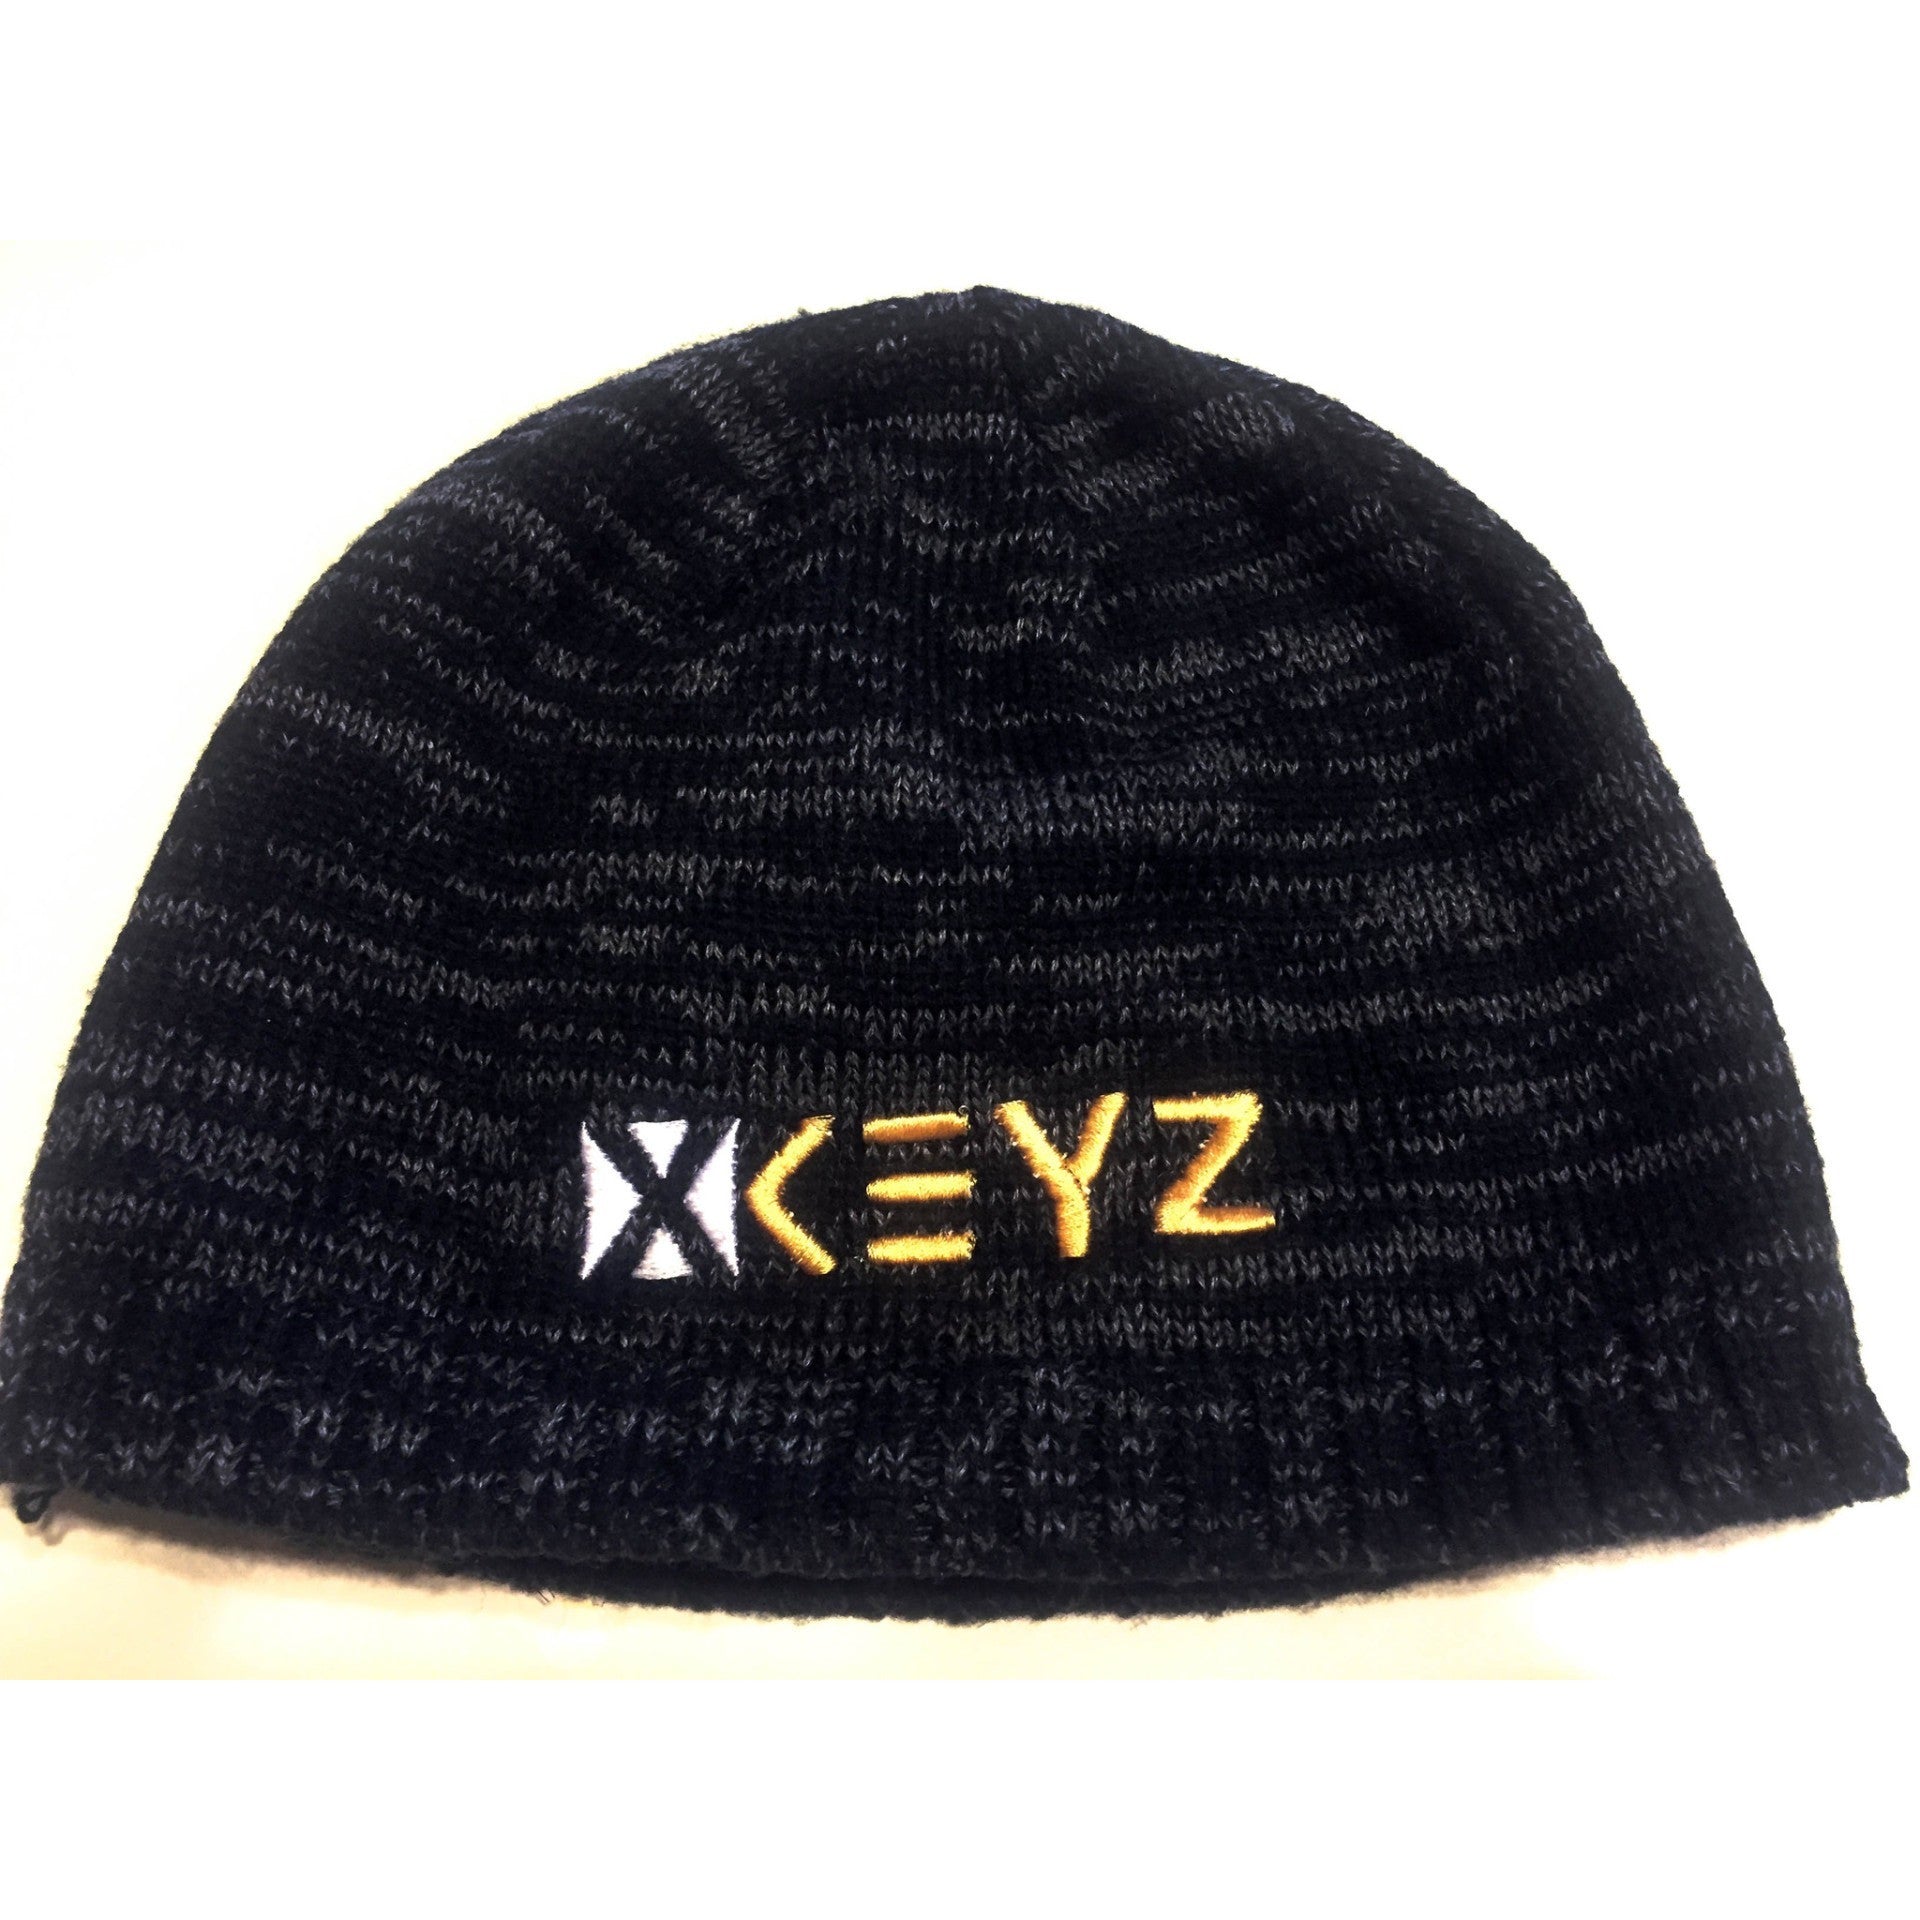 Signature "XKEYZ" Beanie Hat